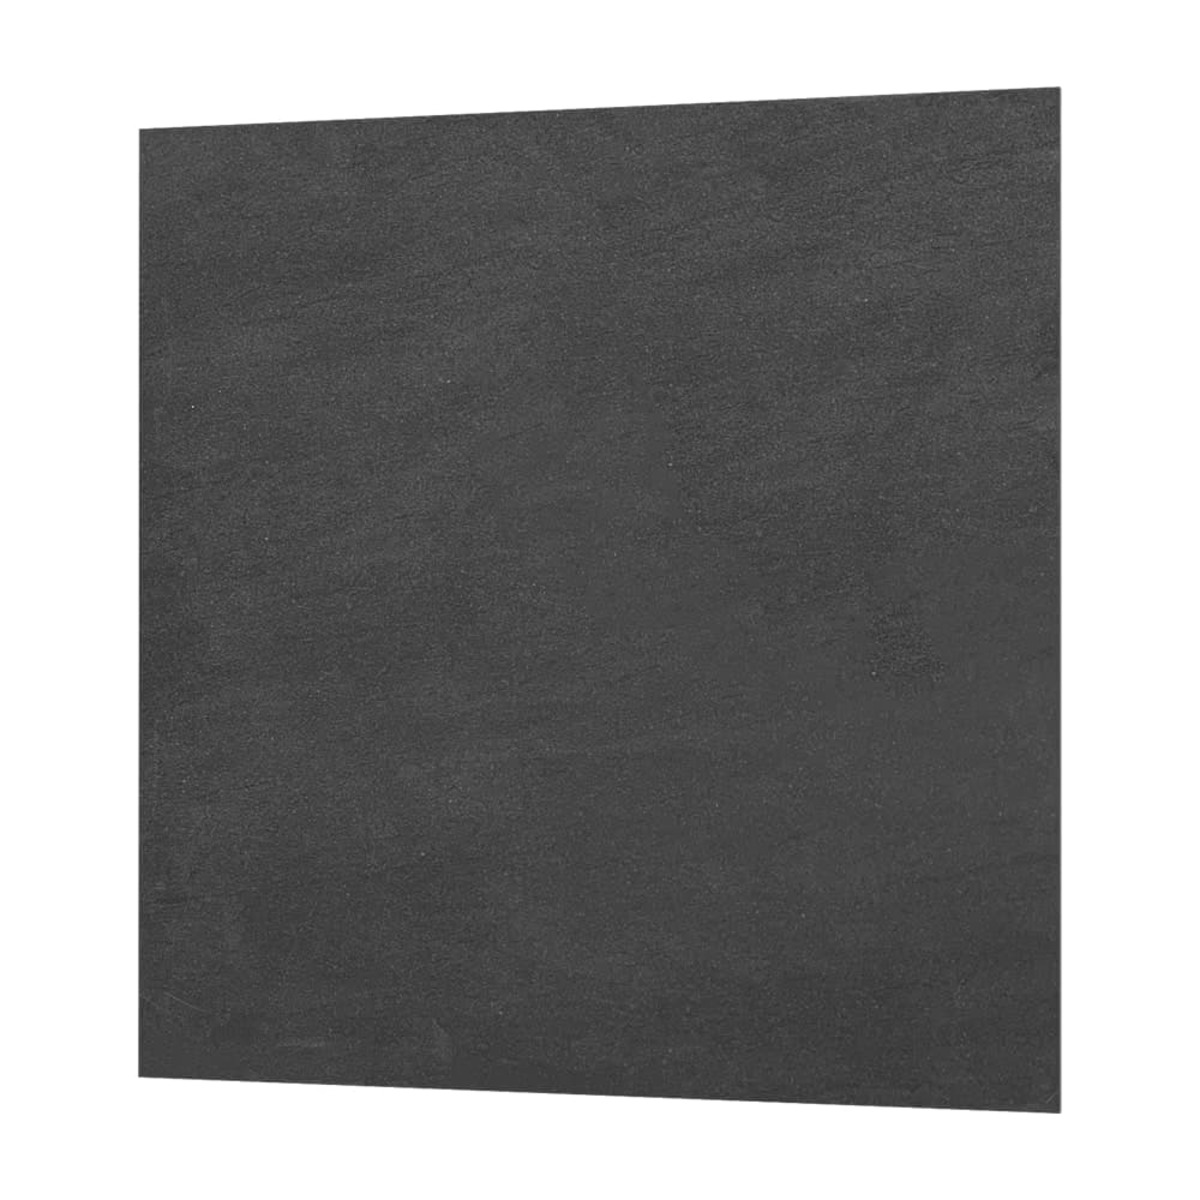 Topný panel Fenix CR+ 59x59 cm keramický černá 11V5430540 Fenix